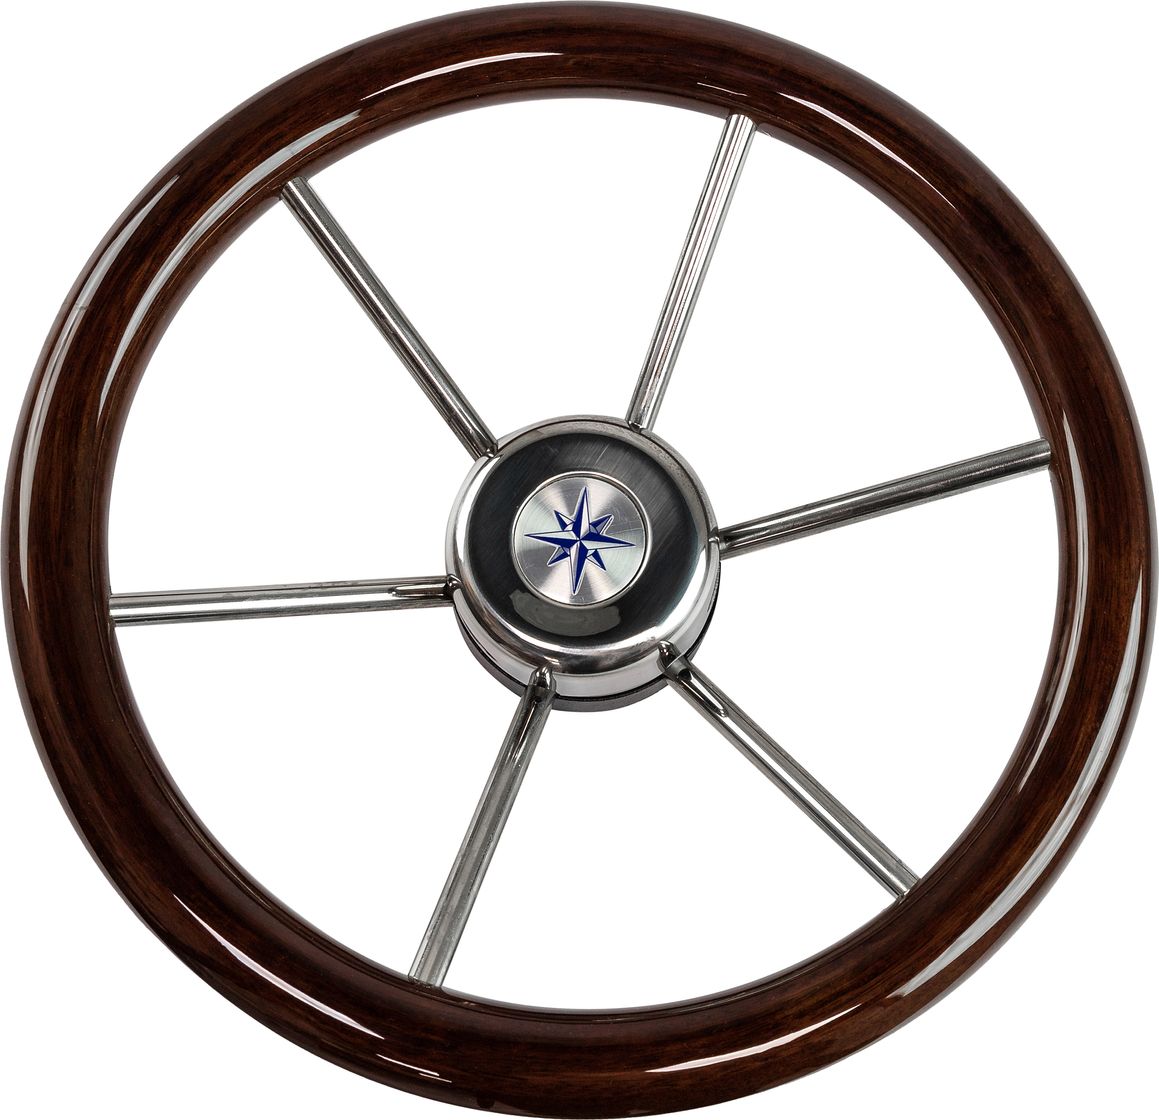 Рулевое колесо LEADER WOOD деревянный обод серебряные спицы д. 340 мм VN7340-33